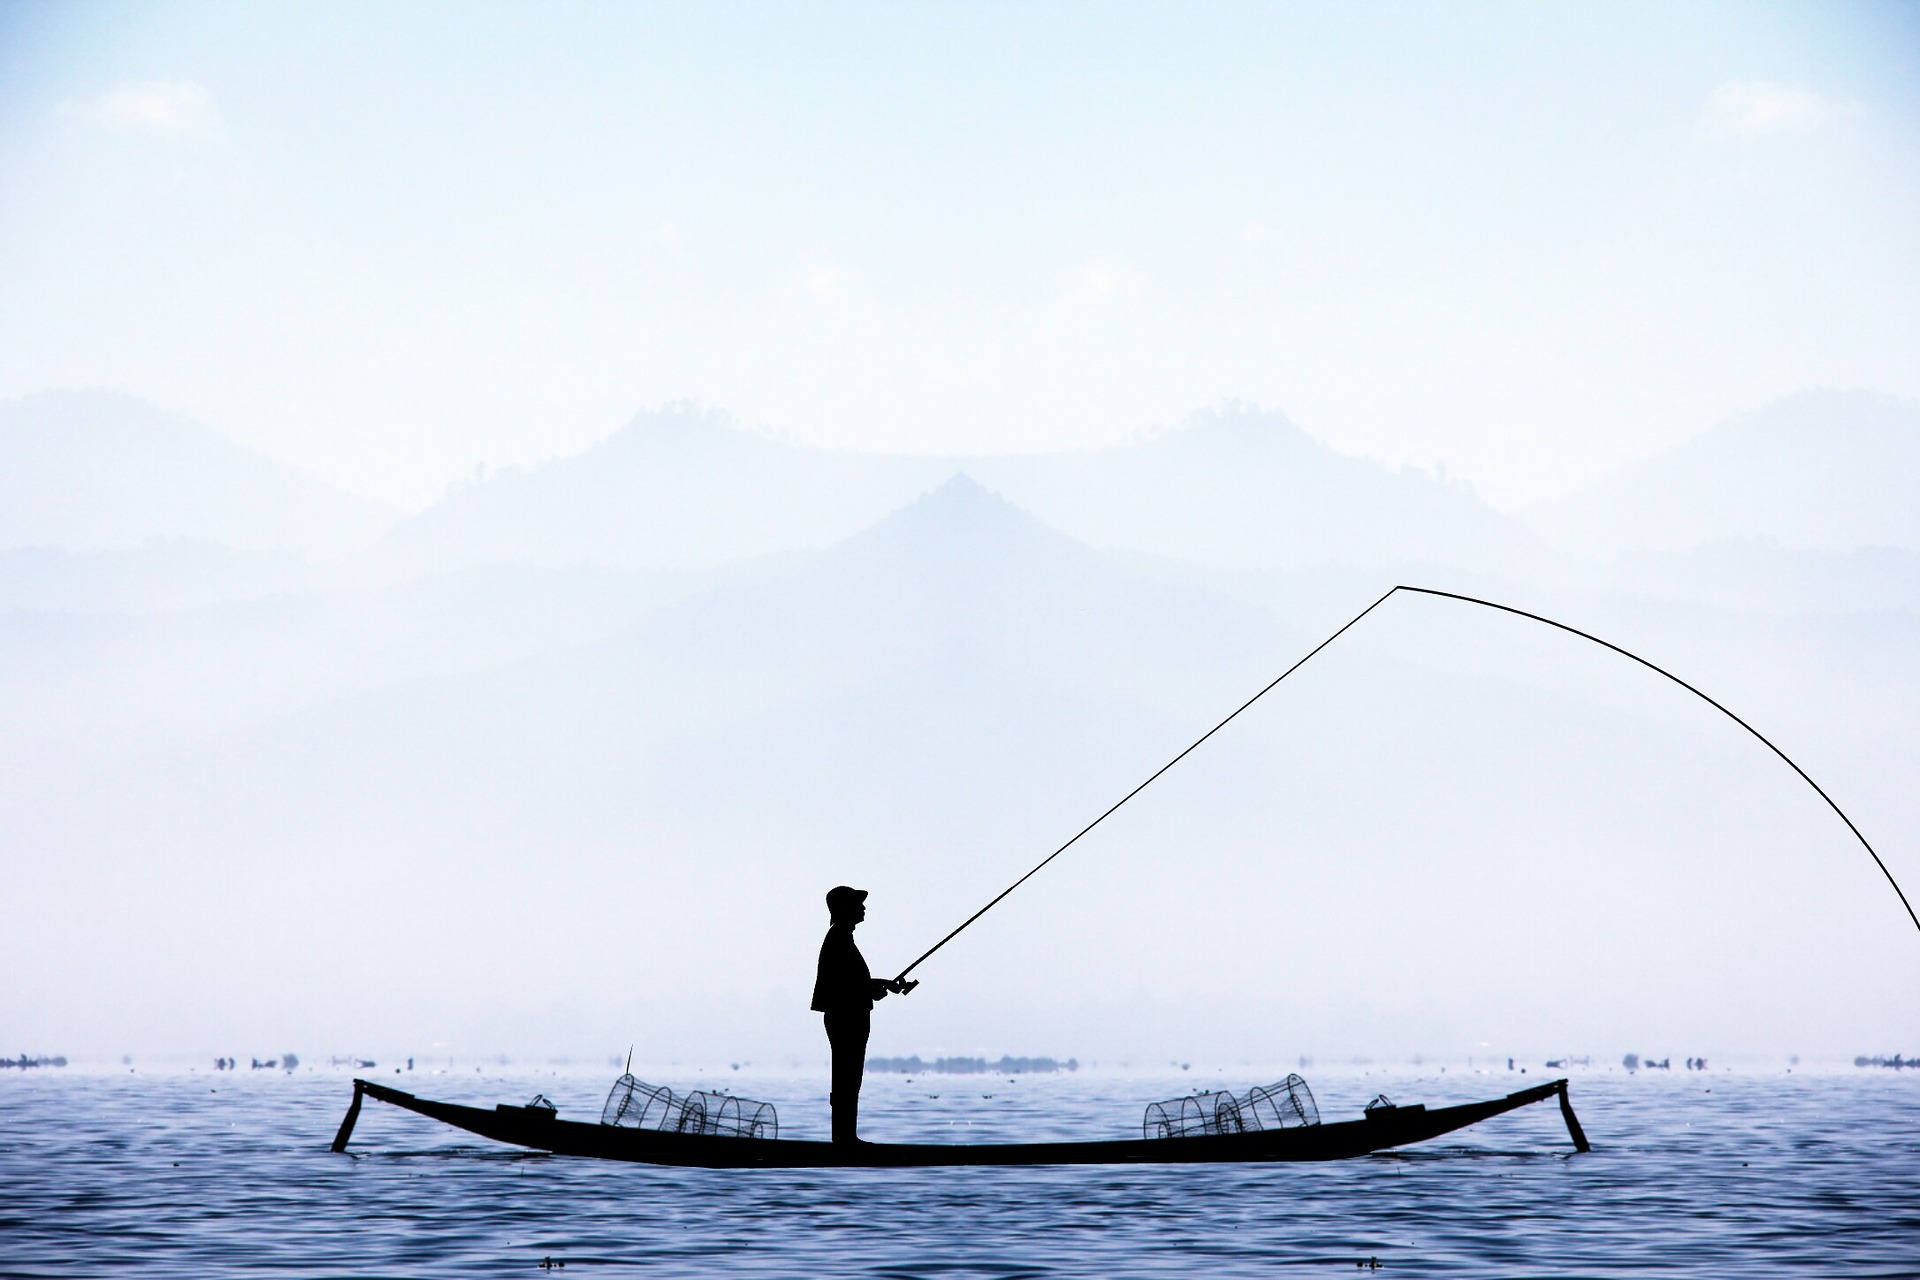 fiskeutrustning asiatisk